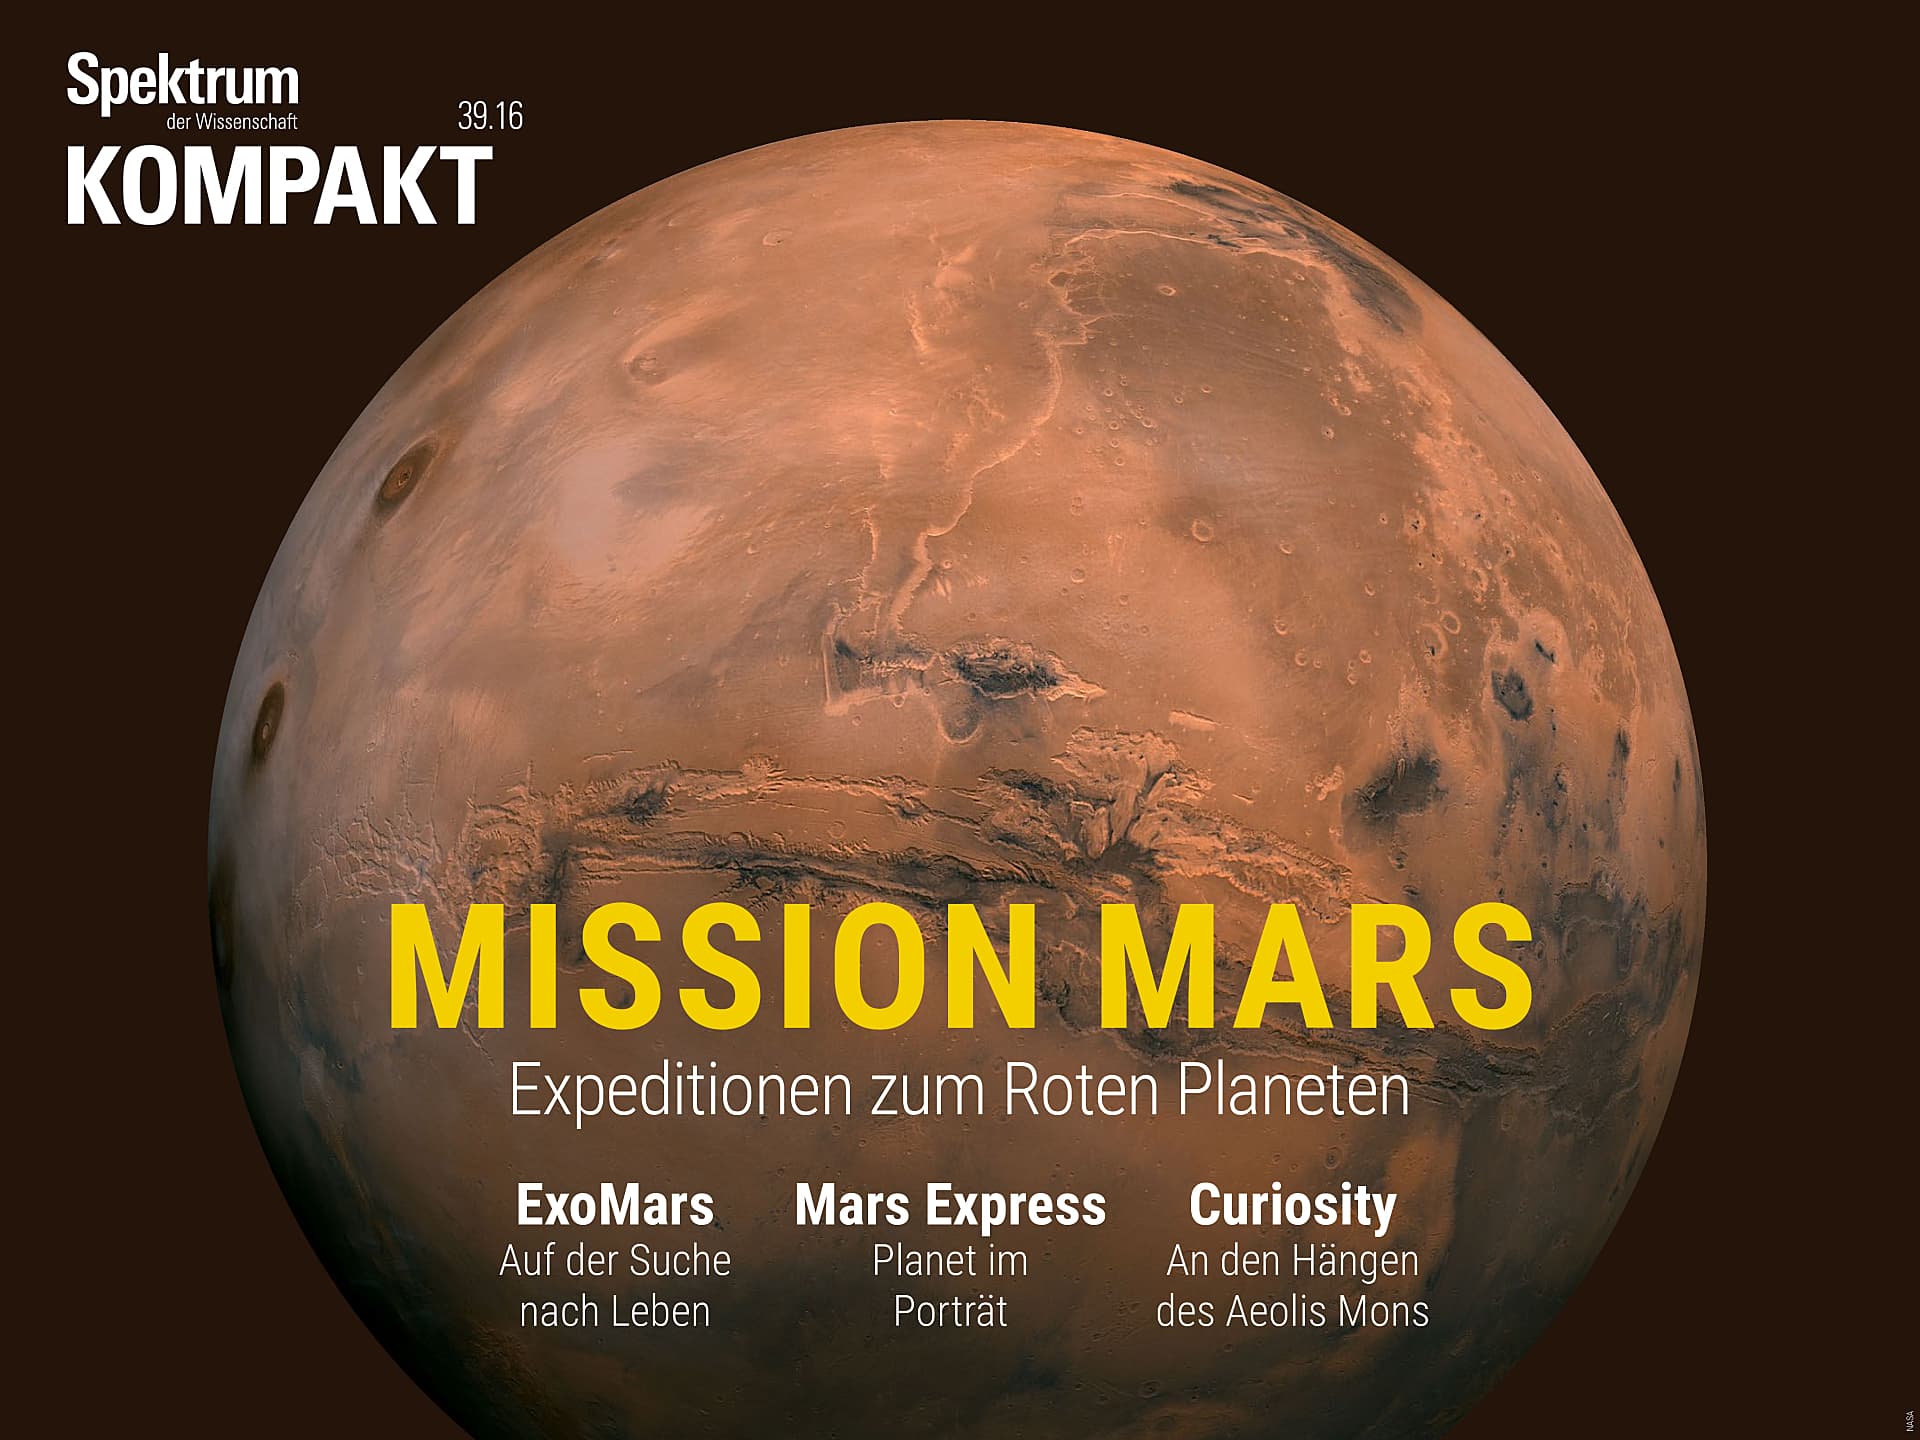 Mission Mars - Expeditionen zum Roten Planeten